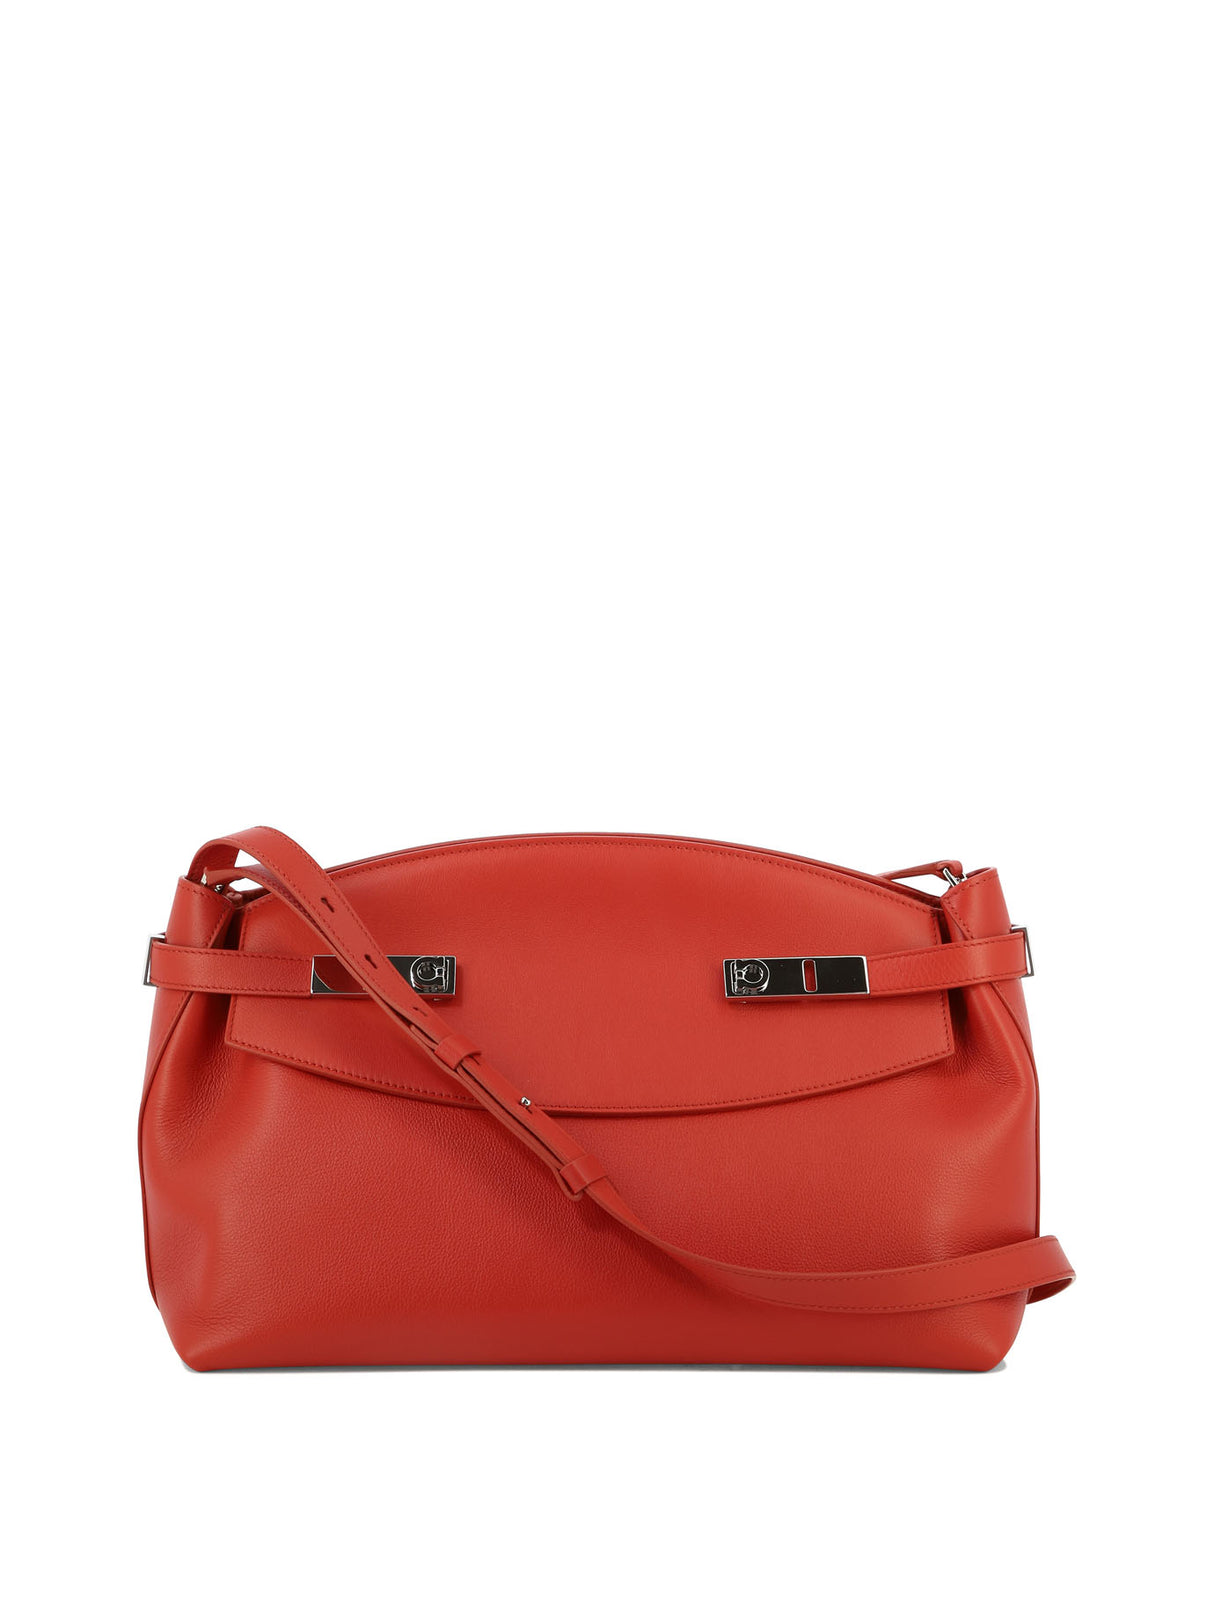 時尚女性不可或缺的火紅色精緻斜背手提包